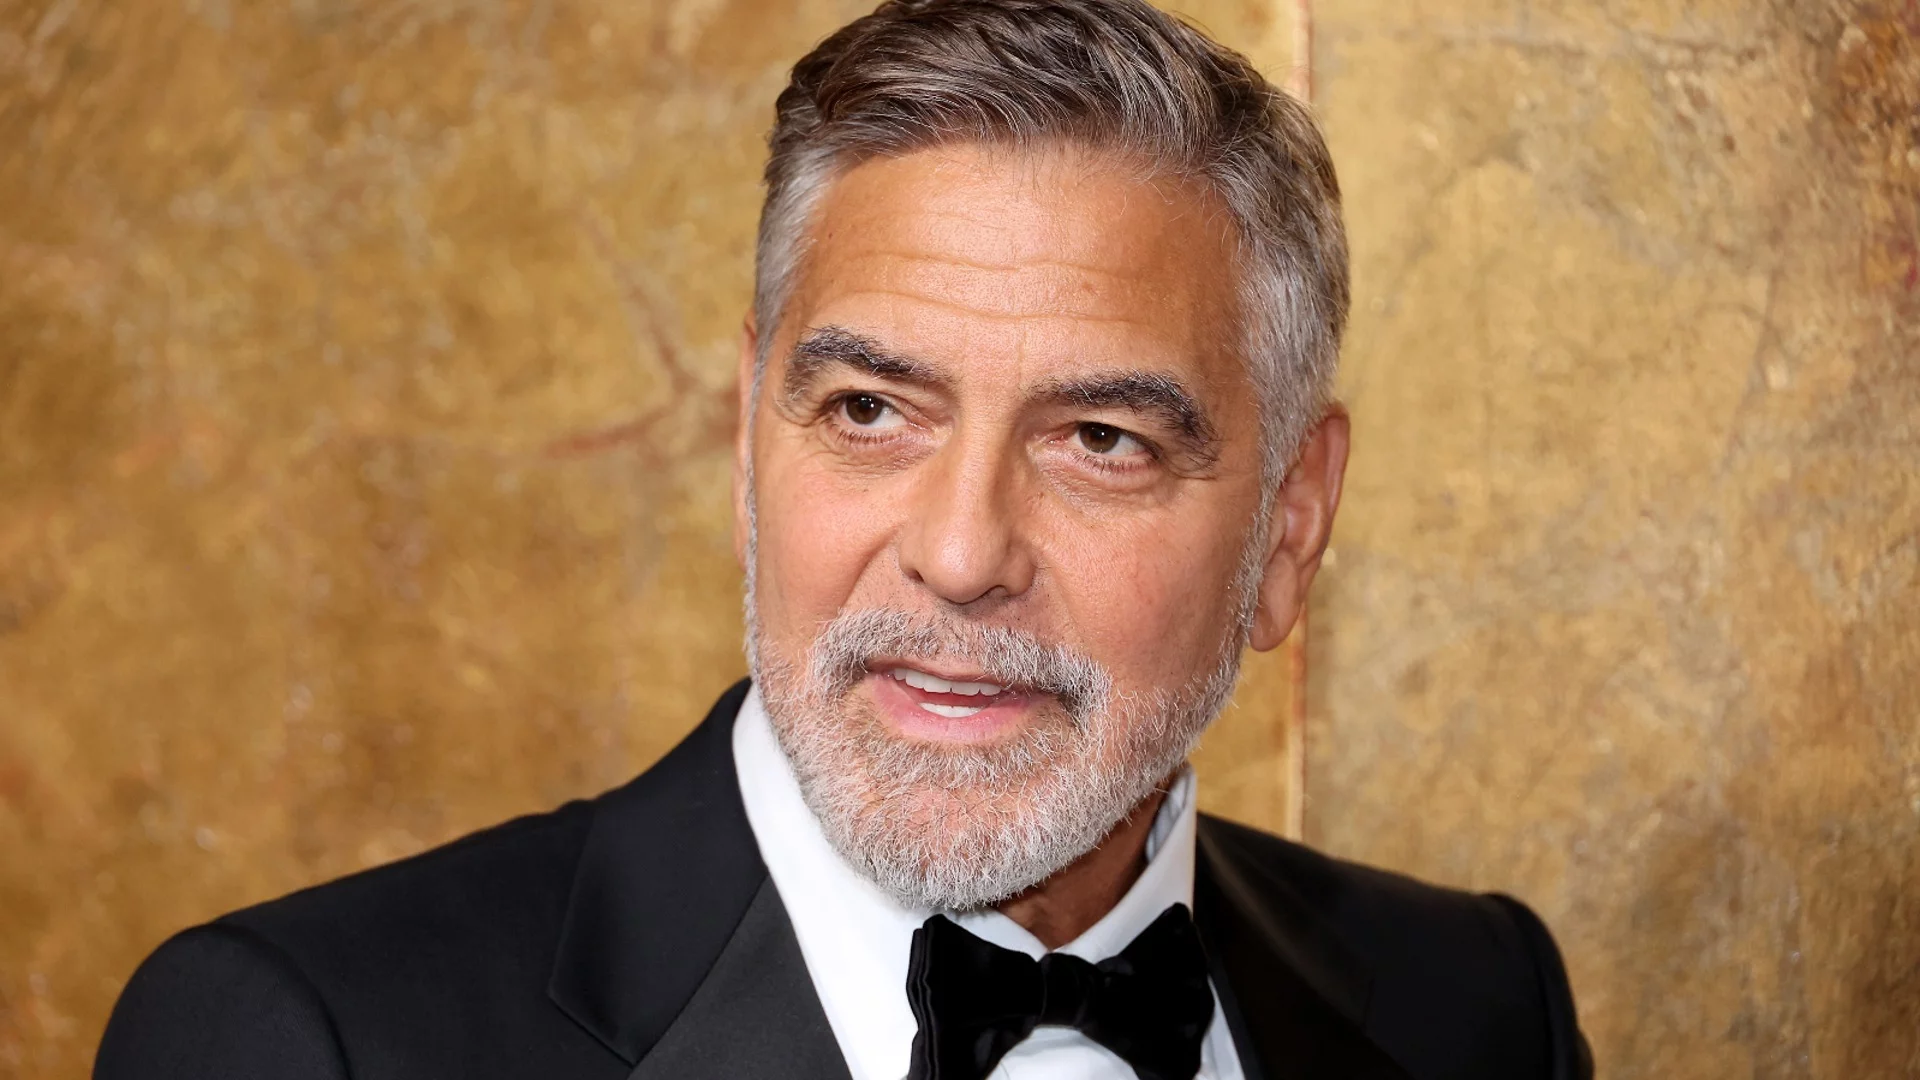 След призива да се оттегли: Джордж Клуни похвали Байдън и подкрепи Камала Харис